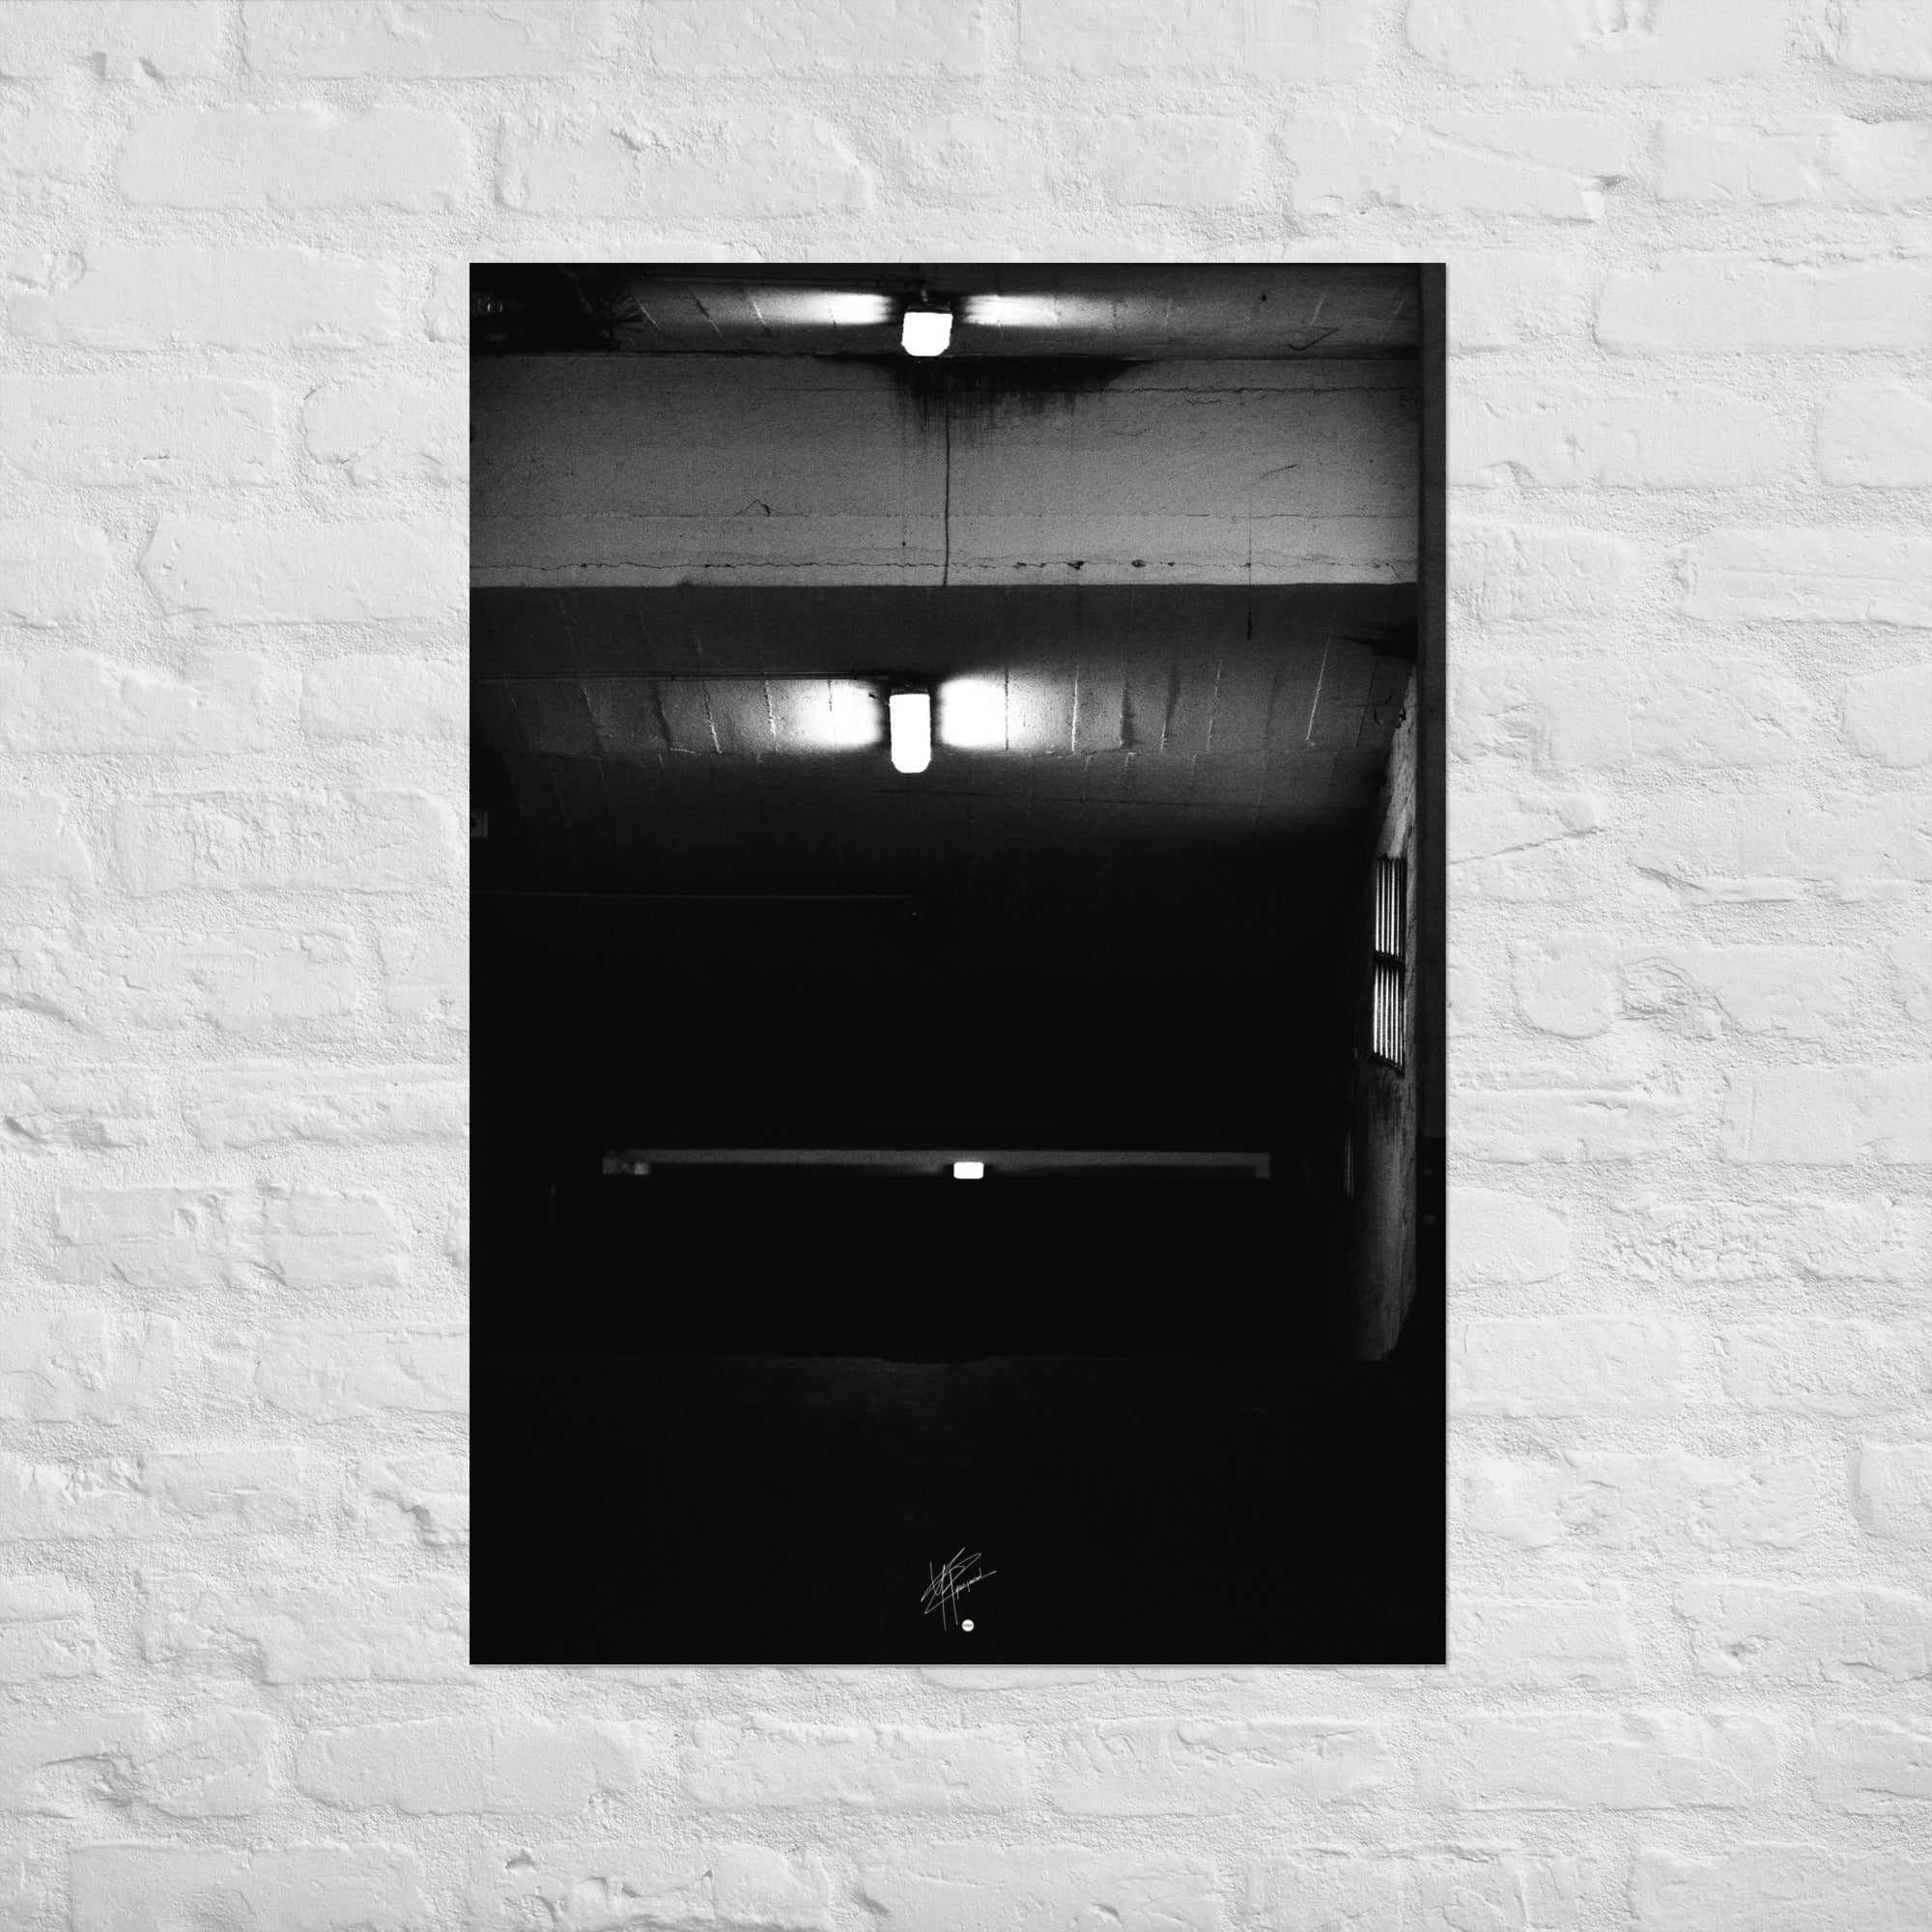 Photographie en noir et blanc intitulée 'Glaçant', montrant trois néons blancs éclairant une entrée de garage descendante dans une atmosphère sombre et mystérieuse.